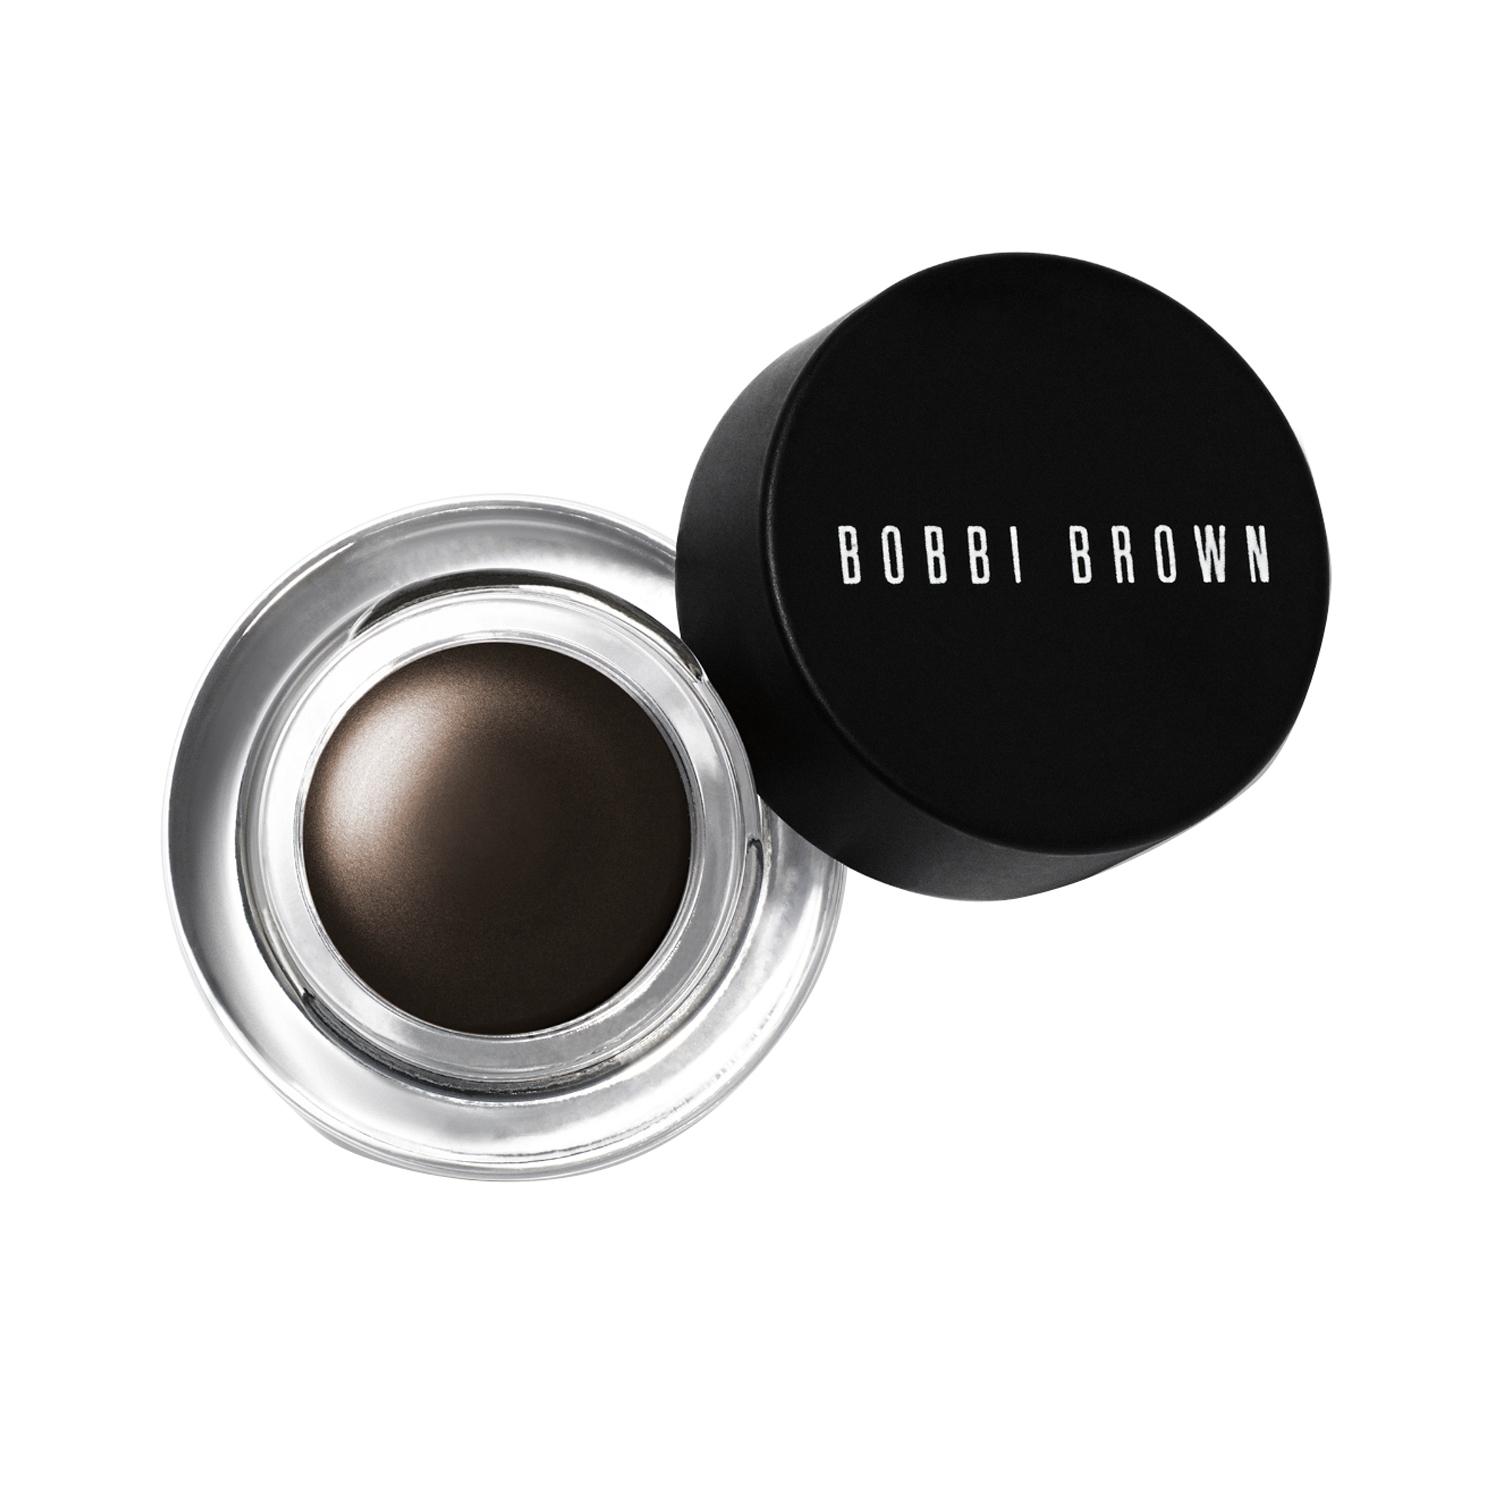 Bobbi Brown Long-Wear Gel Eyeliner - Espresso Ink (3g)